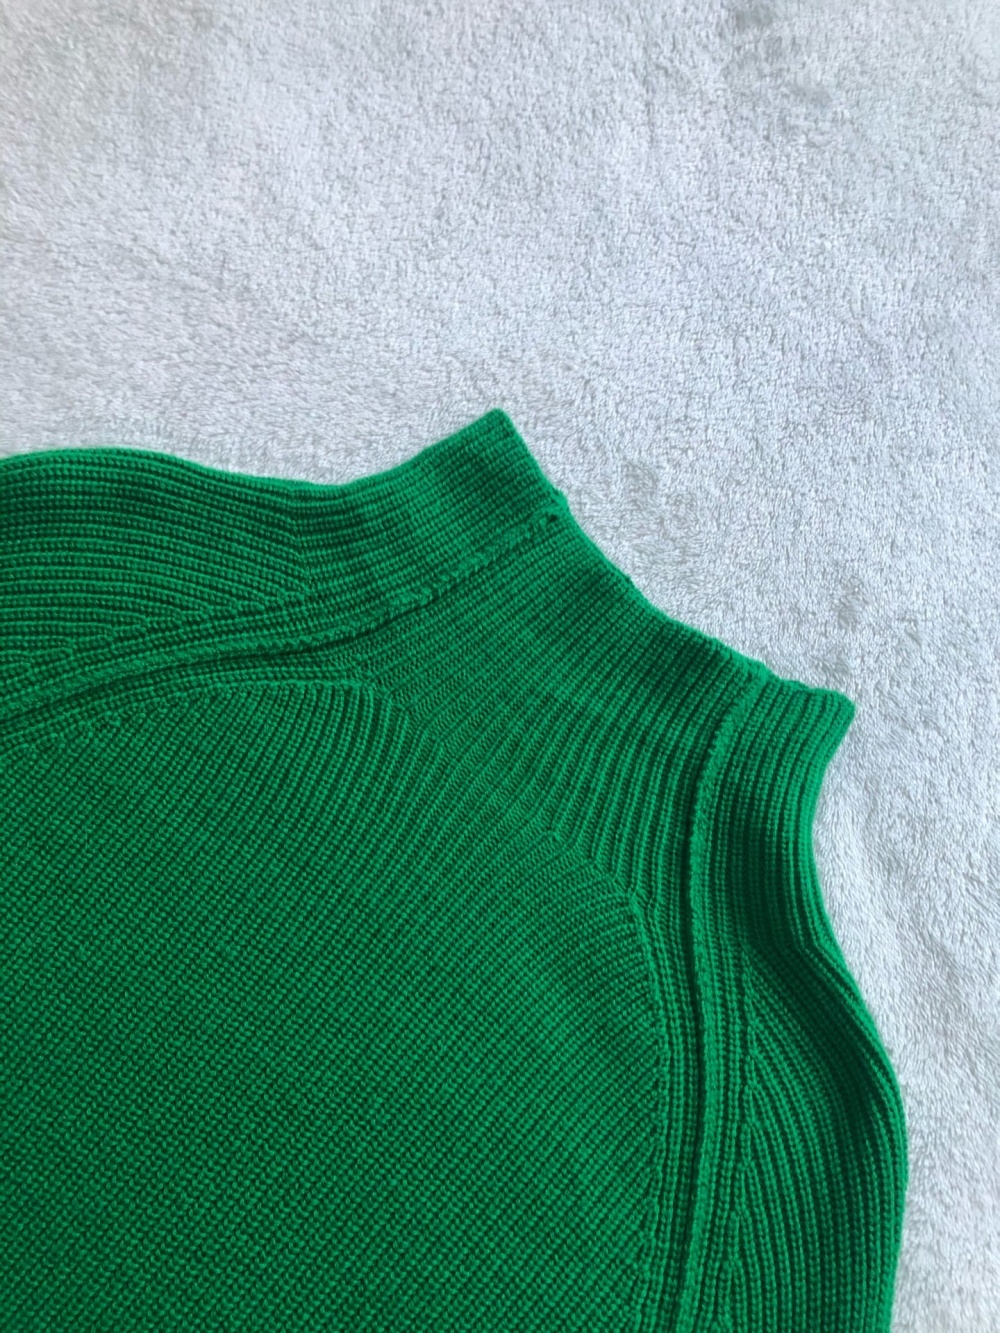 Пуловер BETTER RICH. Размер S- M-L.